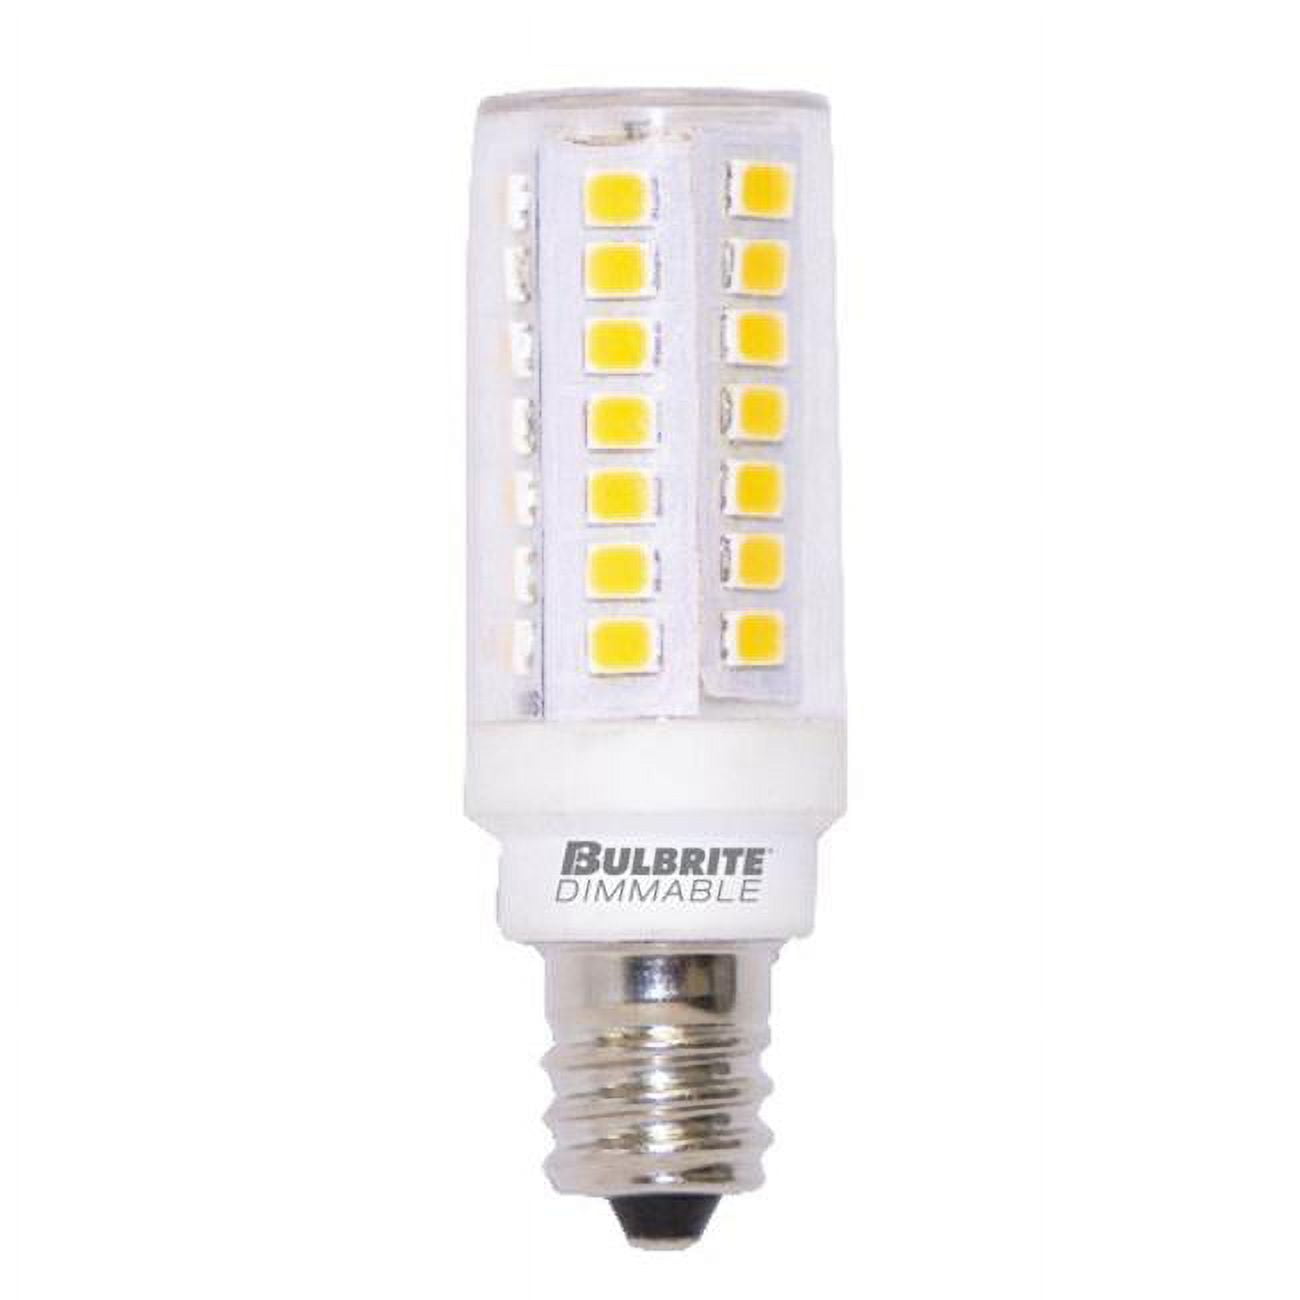 Picture of Bulbrite Pack of (2) 5 Watt 120V Dimmable Clear T6 LED Mini Light Bulbs with Candelabra (E12) Base  3000K Soft White Light  550 Lumens